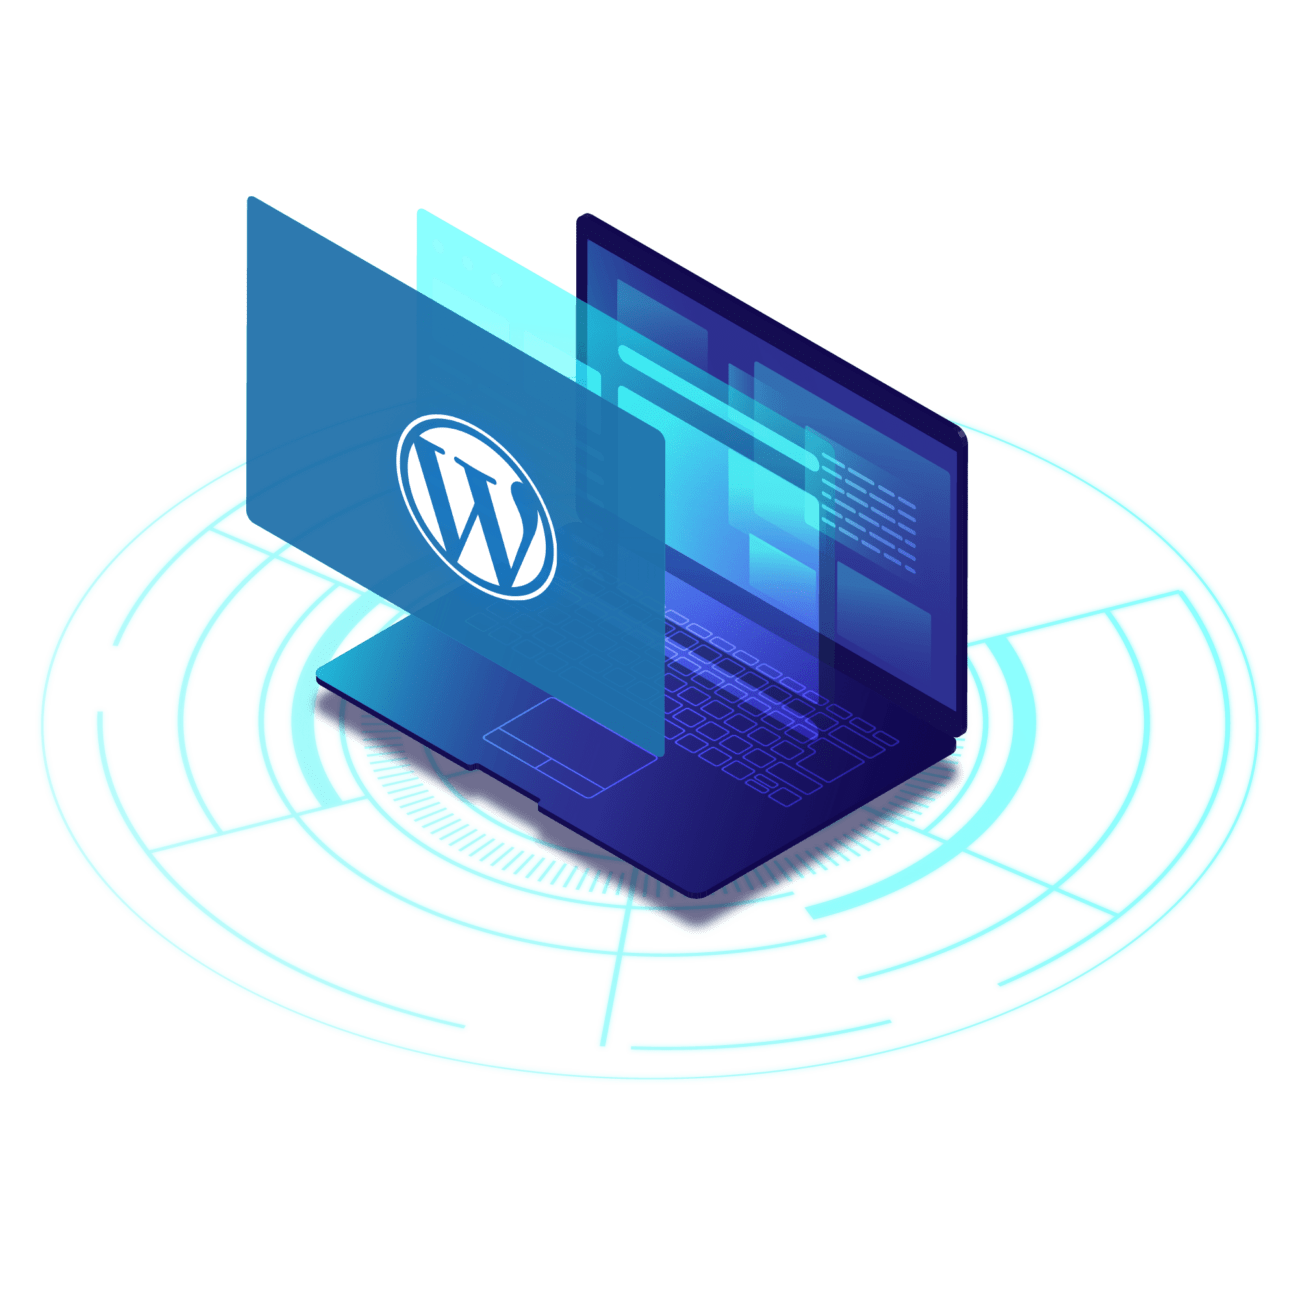 WordPress logo jumping out of laptop screen